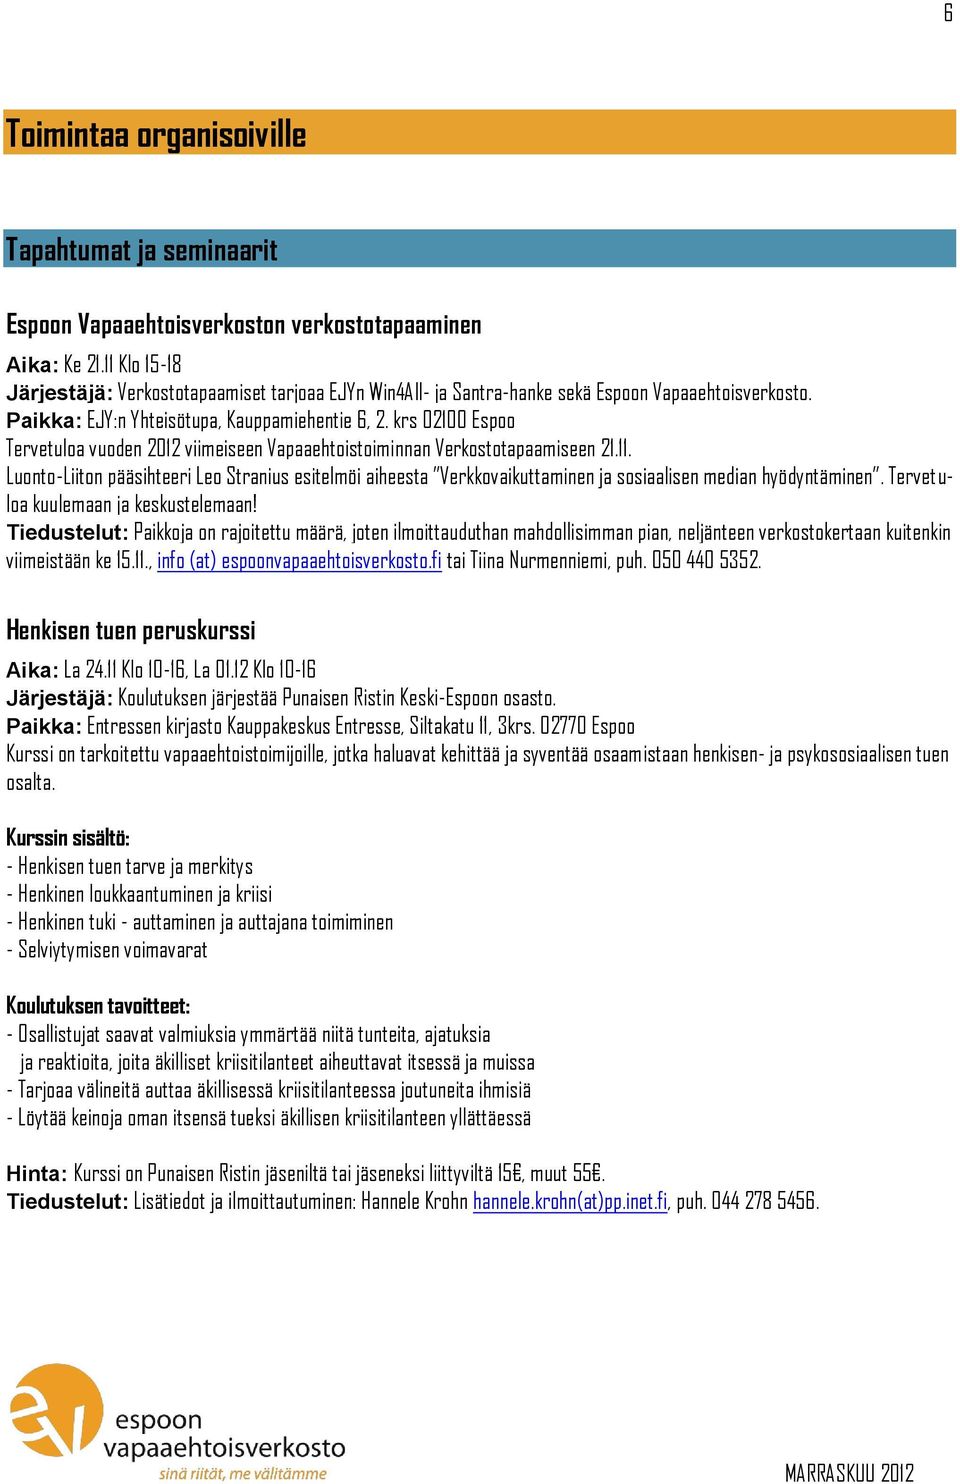 krs 02100 Espoo Tervetuloa vuoden 2012 viimeiseen Vapaaehtoistoiminnan Verkostotapaamiseen 21.11.